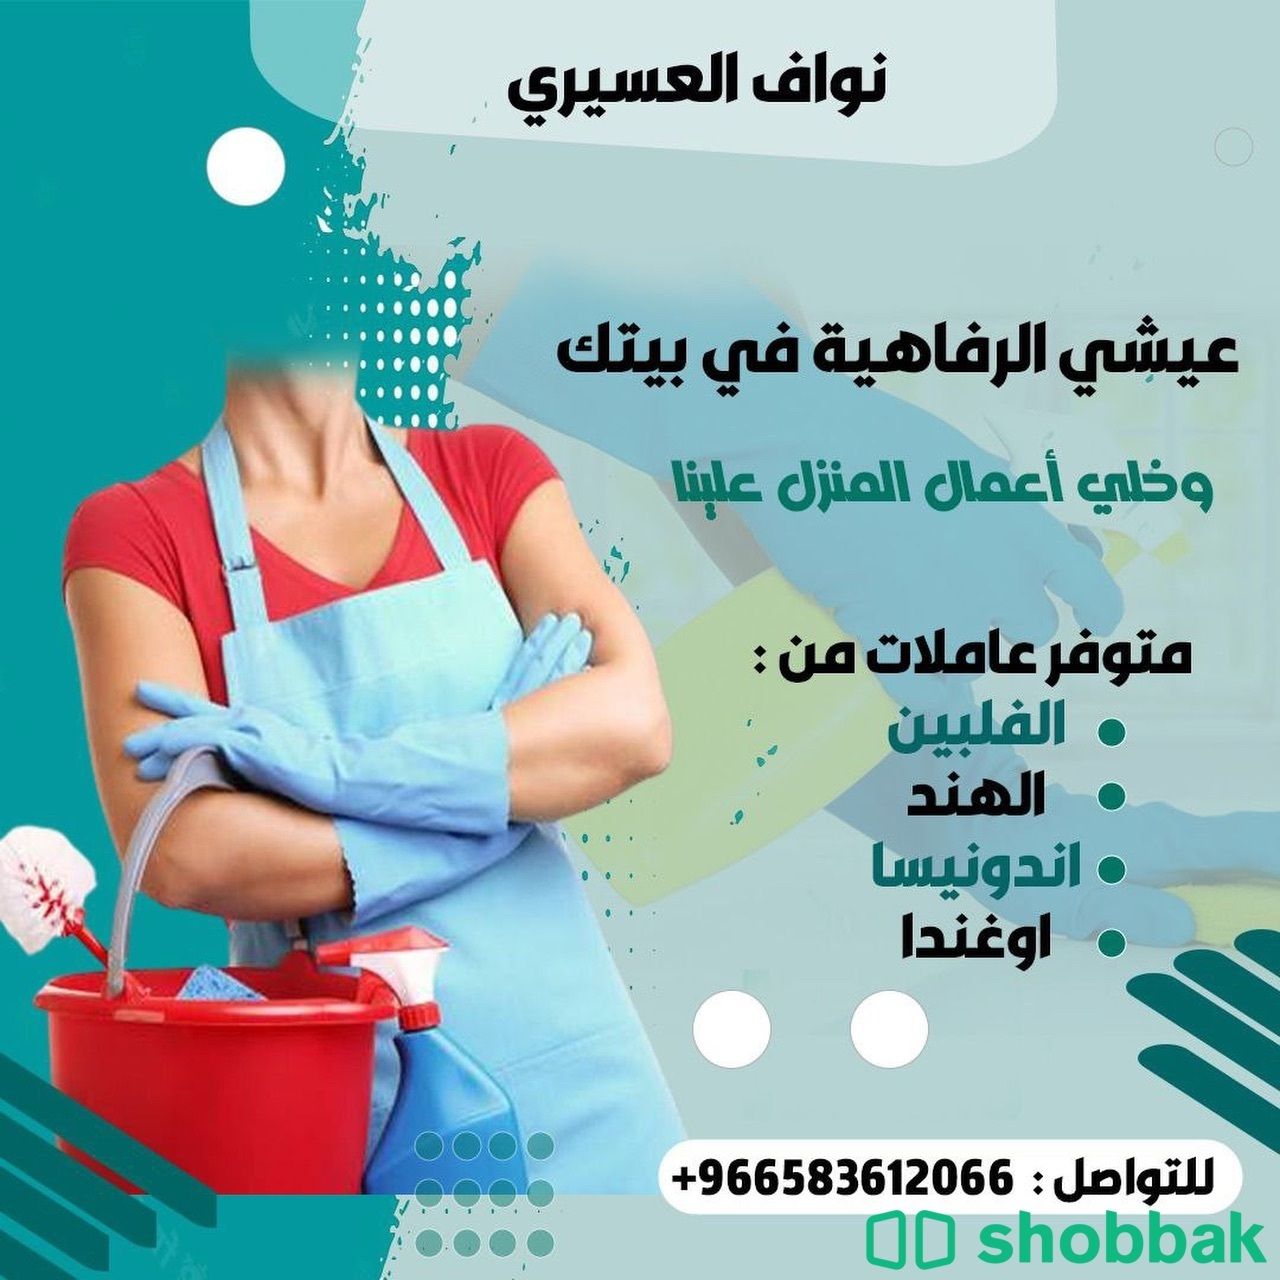 يسعدنا خدمتكم لتوفير العماله المنزليه والمهنيه المدربه  Shobbak Saudi Arabia